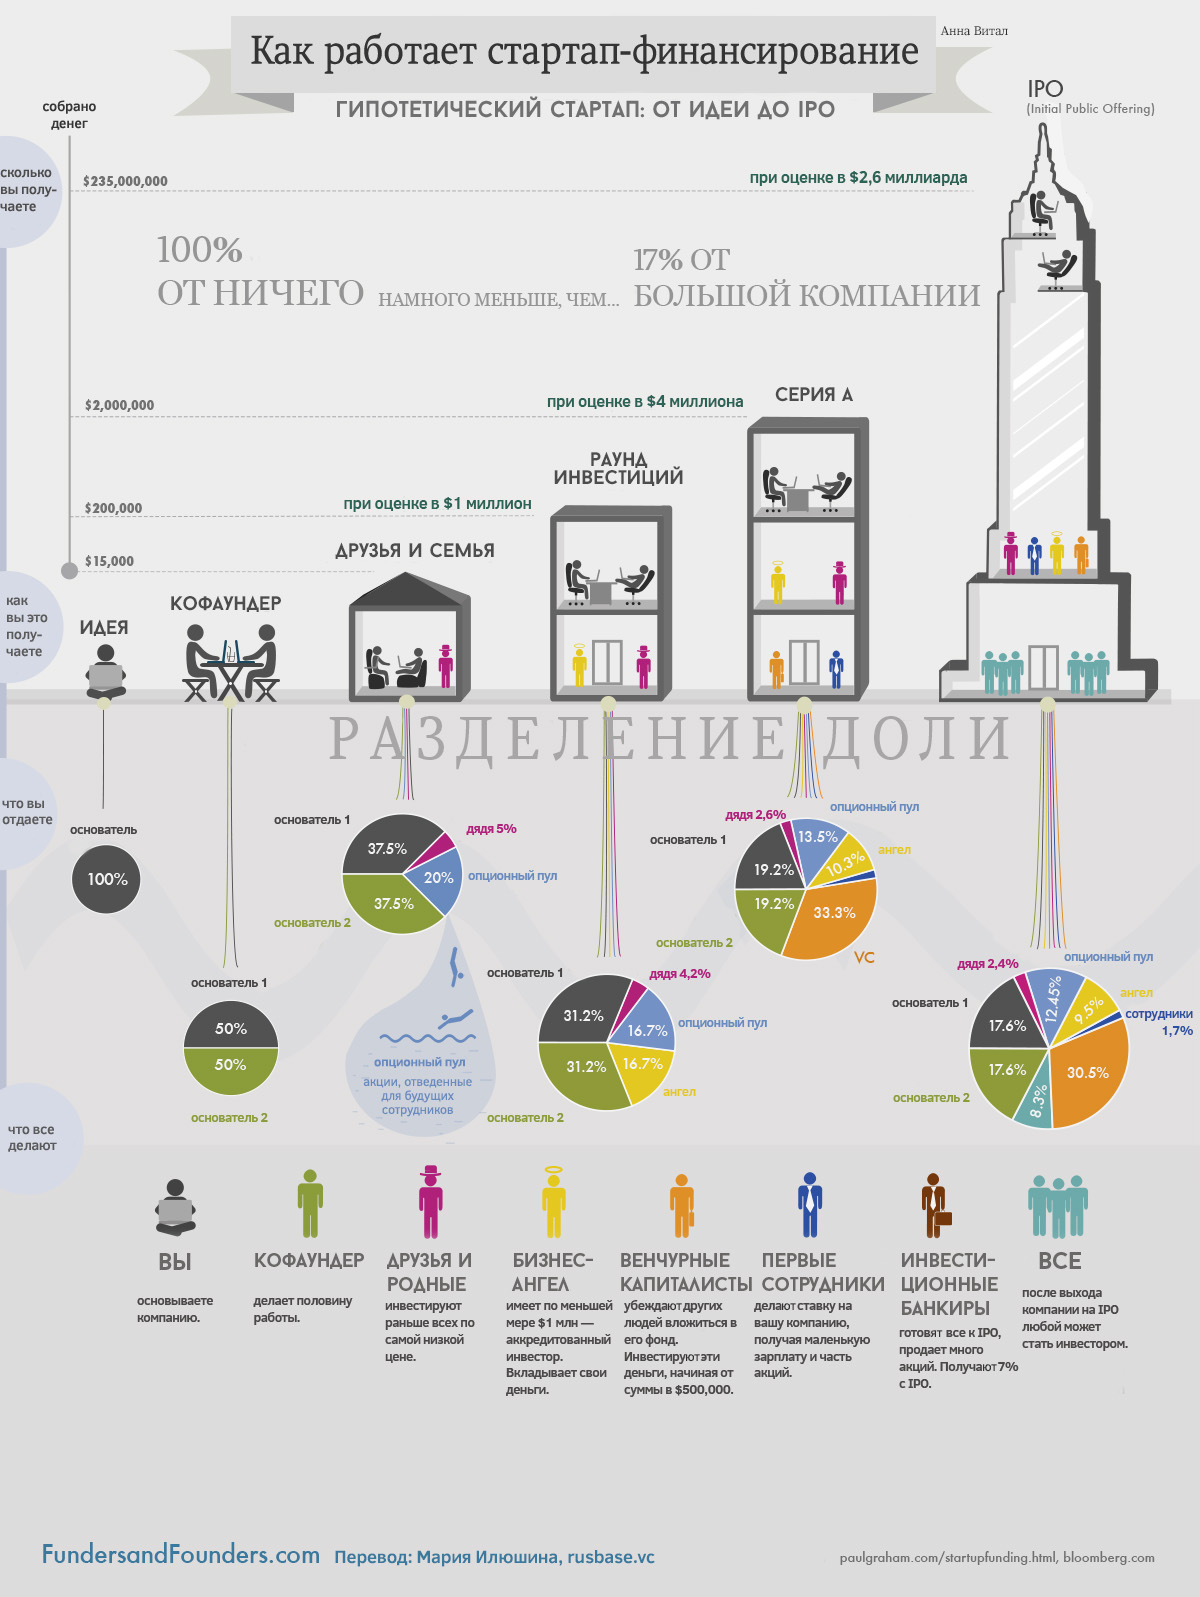 Как работает стартап-финансирование, гипотетический стартап от идеи до IPO - инфографика